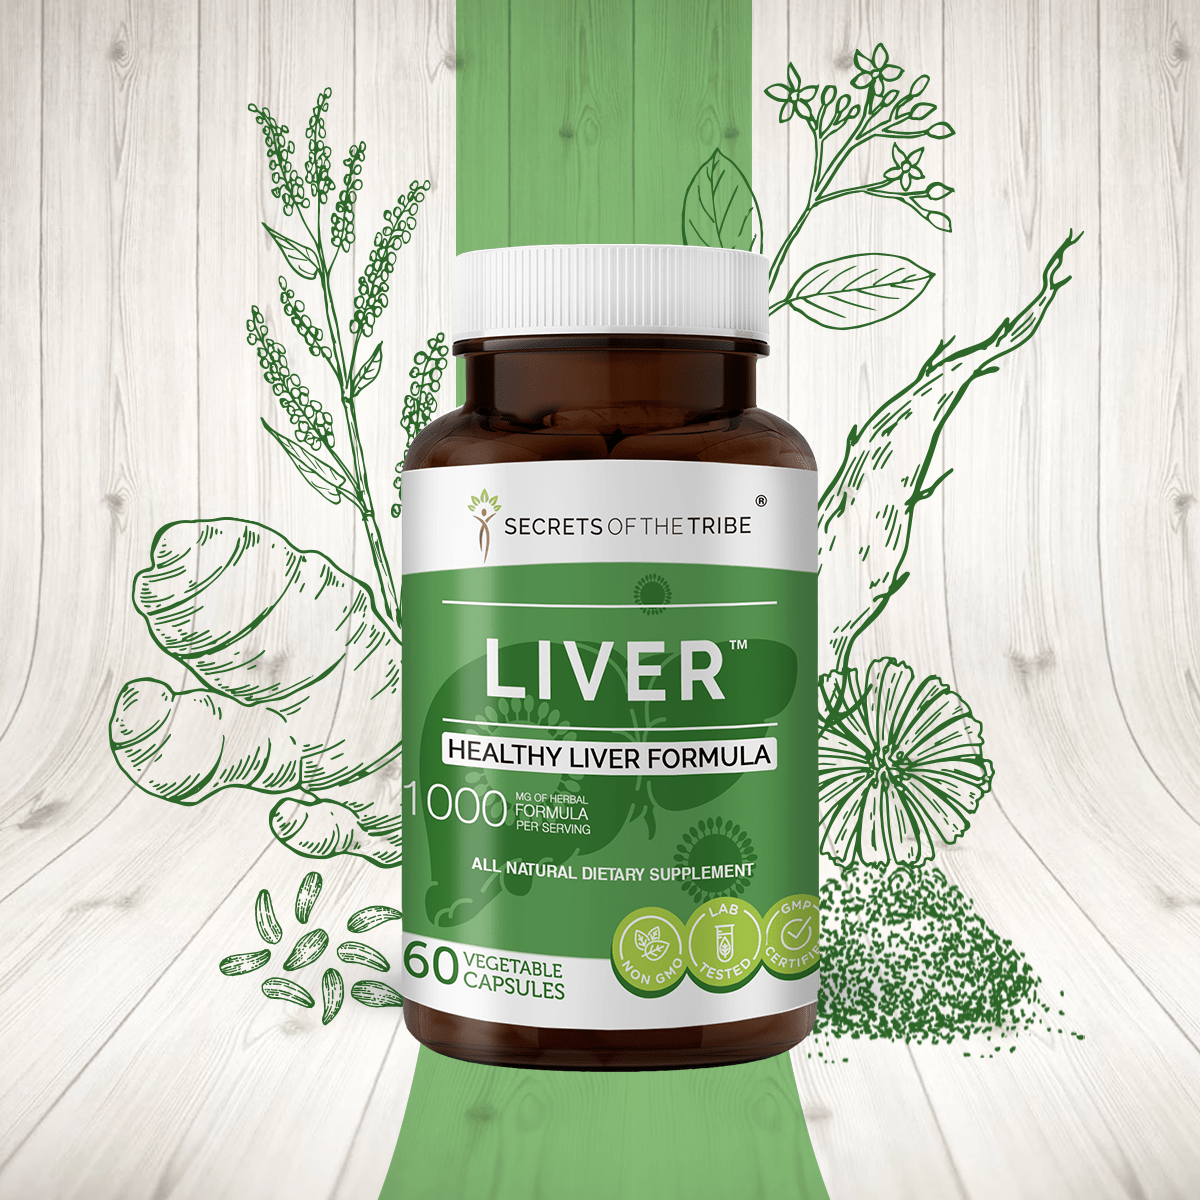 Liver Capsules. Healthy Liver Formula